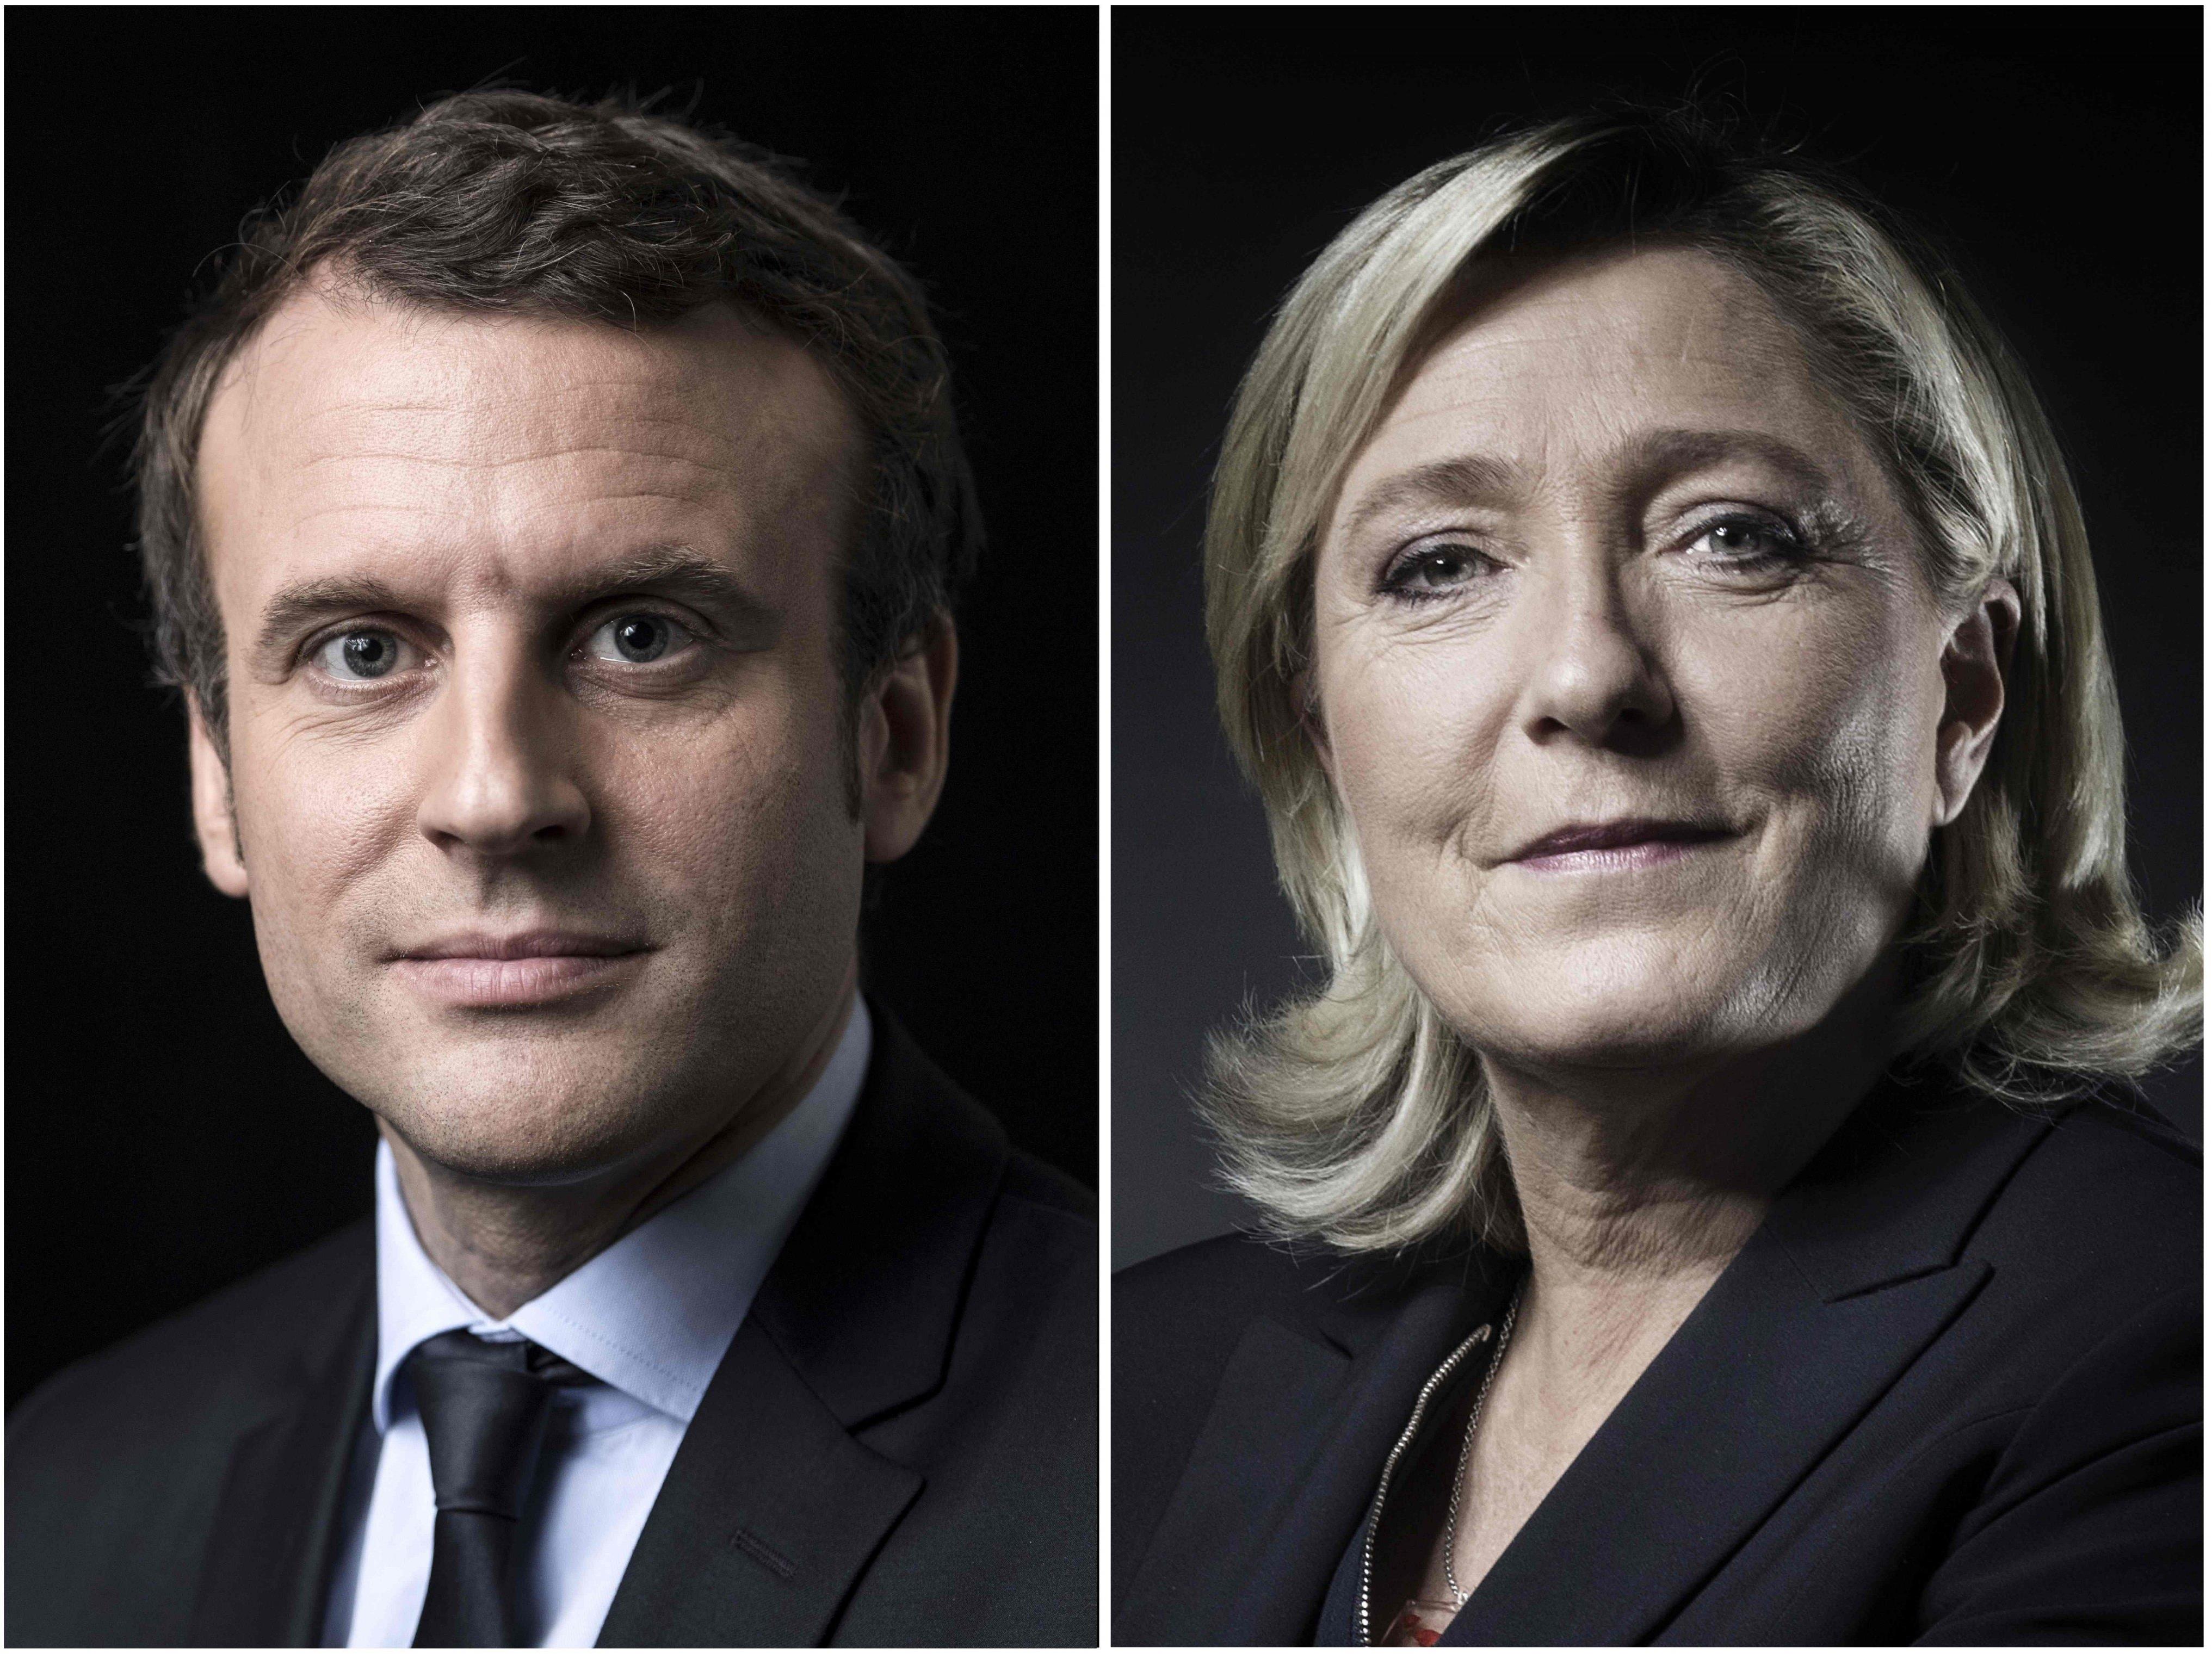 Wie erwartet kommt es zu einer Stichwahl zwischen Macron und Le Pen.